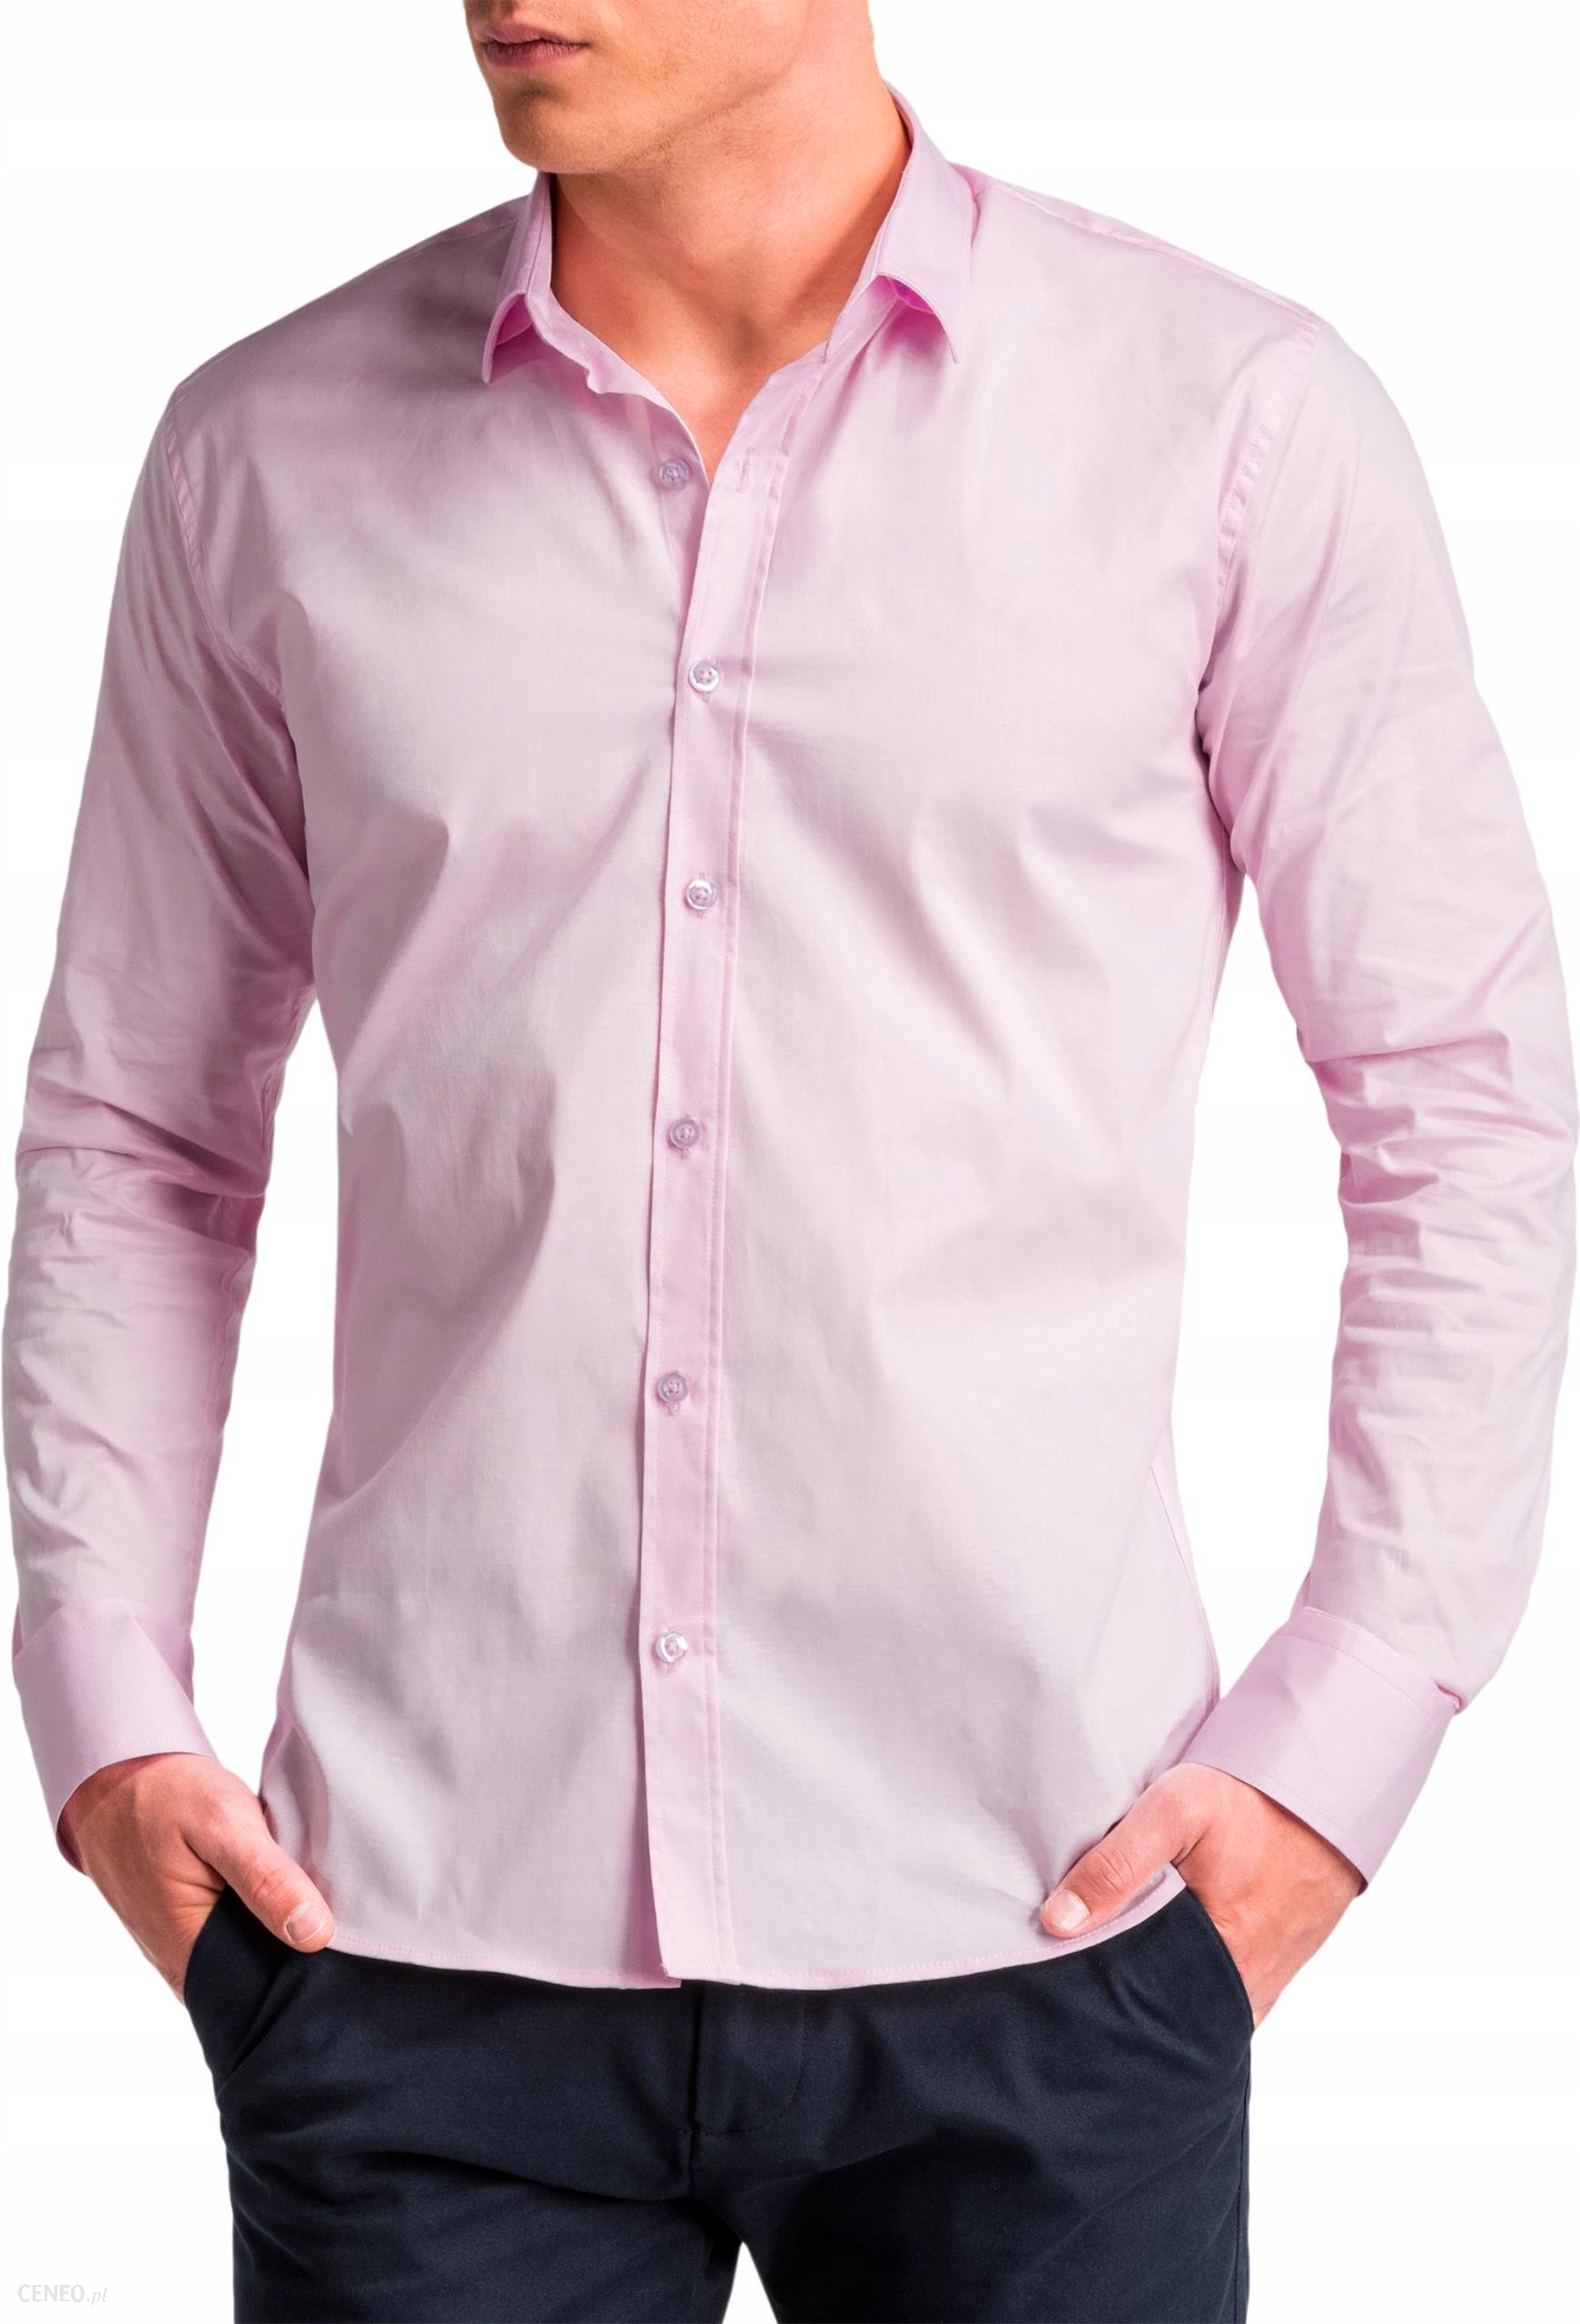 Мужские рубашки каталог. Розовая рубашка. Рубашка мужская. Мужчина в розовой рубашке. Розовая сорочка мужская.